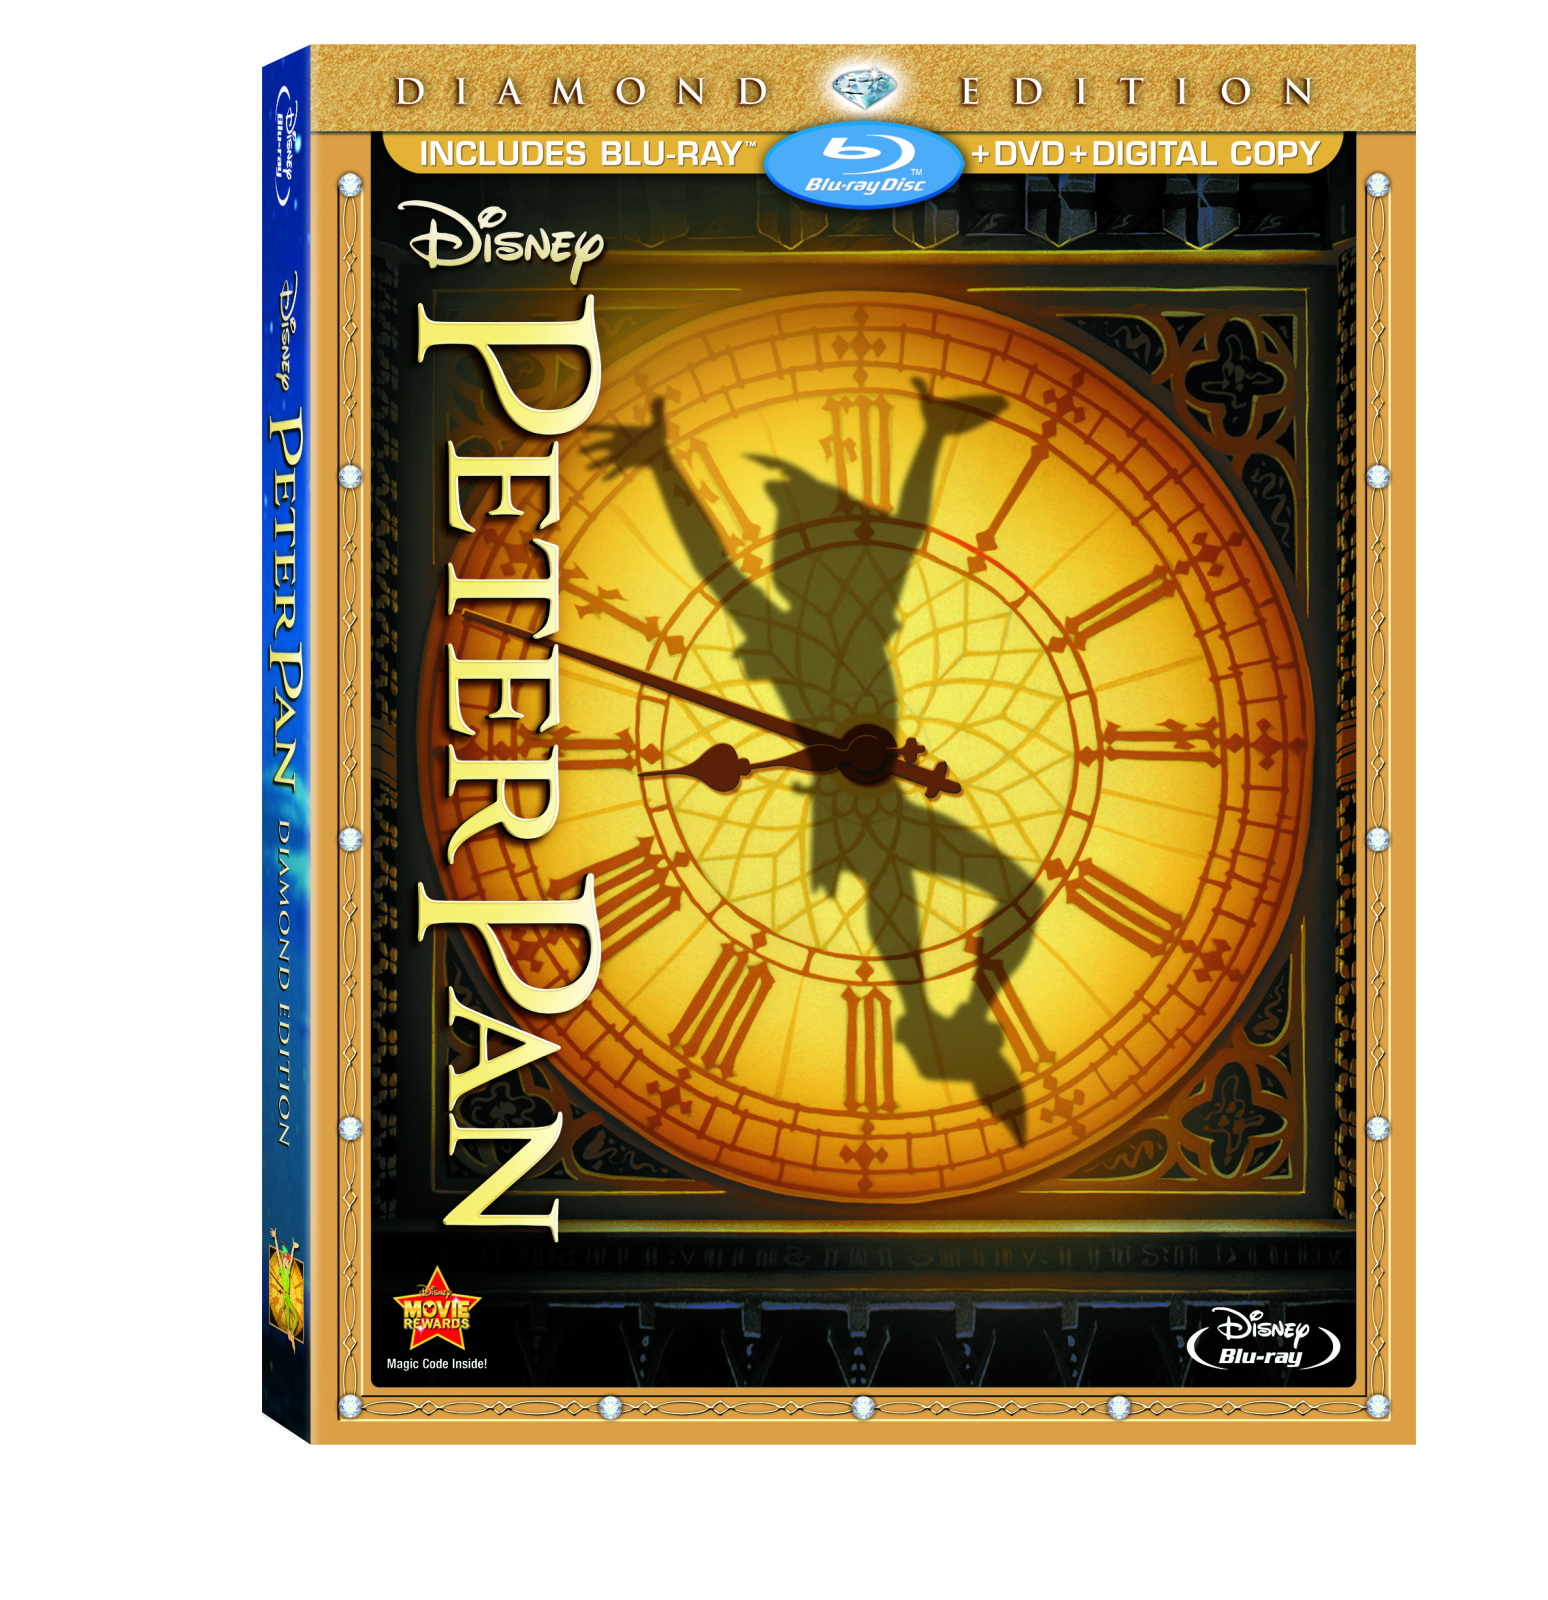 Peter Pan Diamond Edition